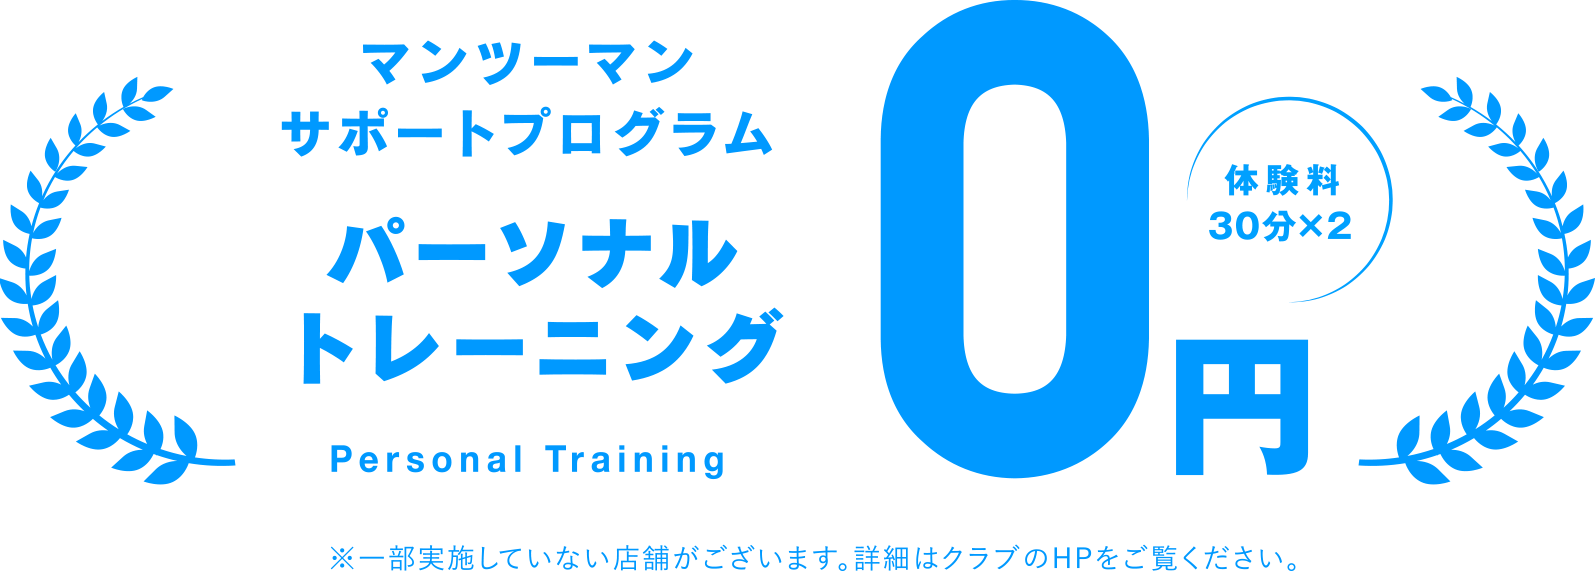 マンツーマンサポートプログラム パーソナルトレーニング体験料30分×2 0円